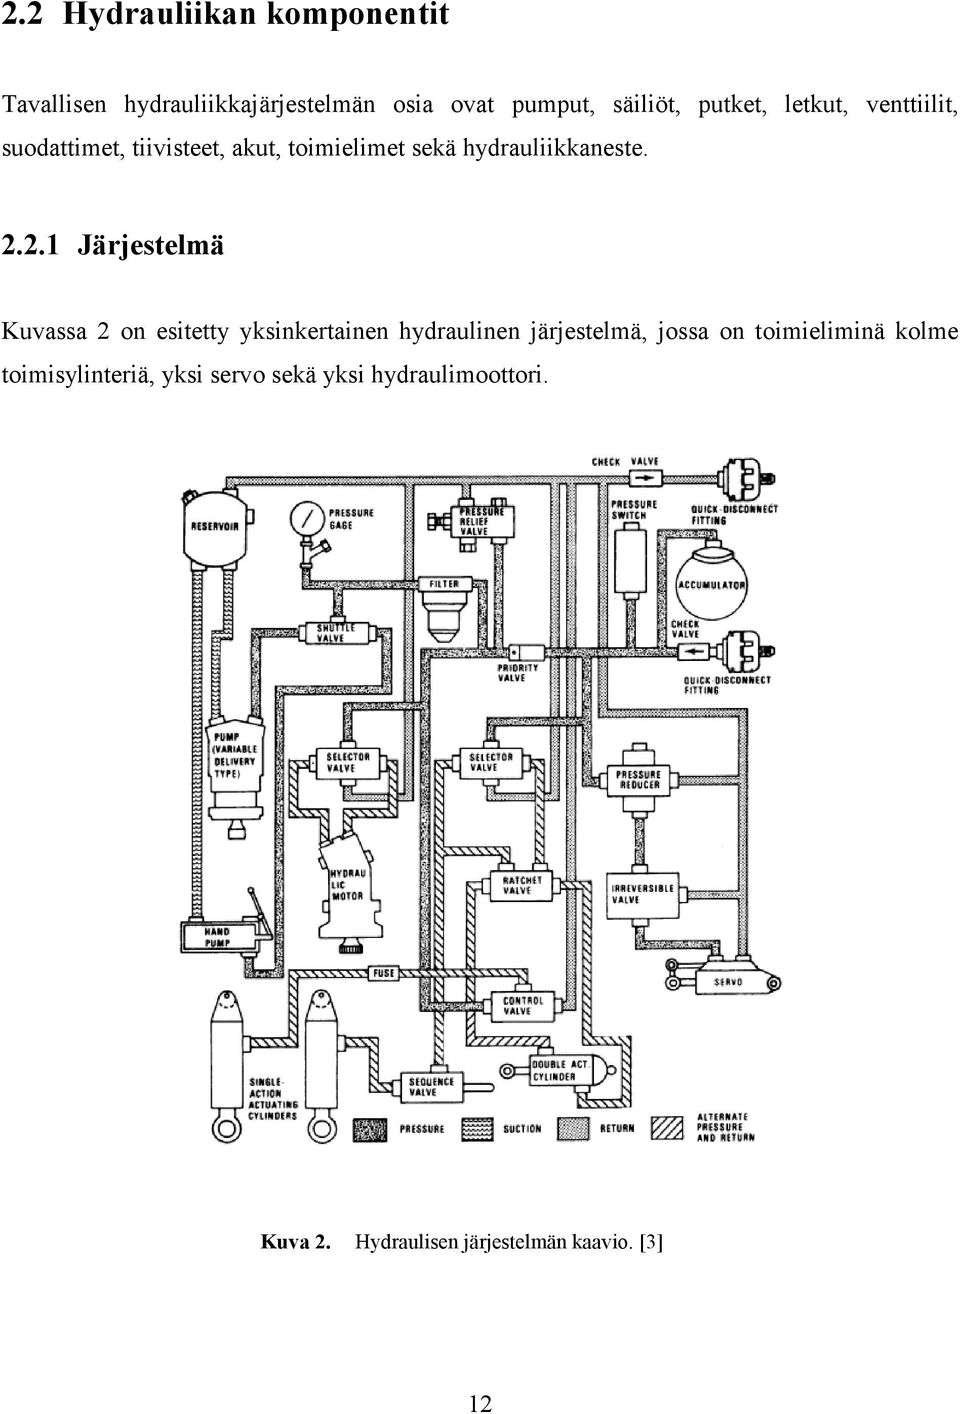 ..1 Jäjestelmä Kuvassa on esitetty yksinketainen hydaulinen jäjestelmä, jossa on toimieliminä